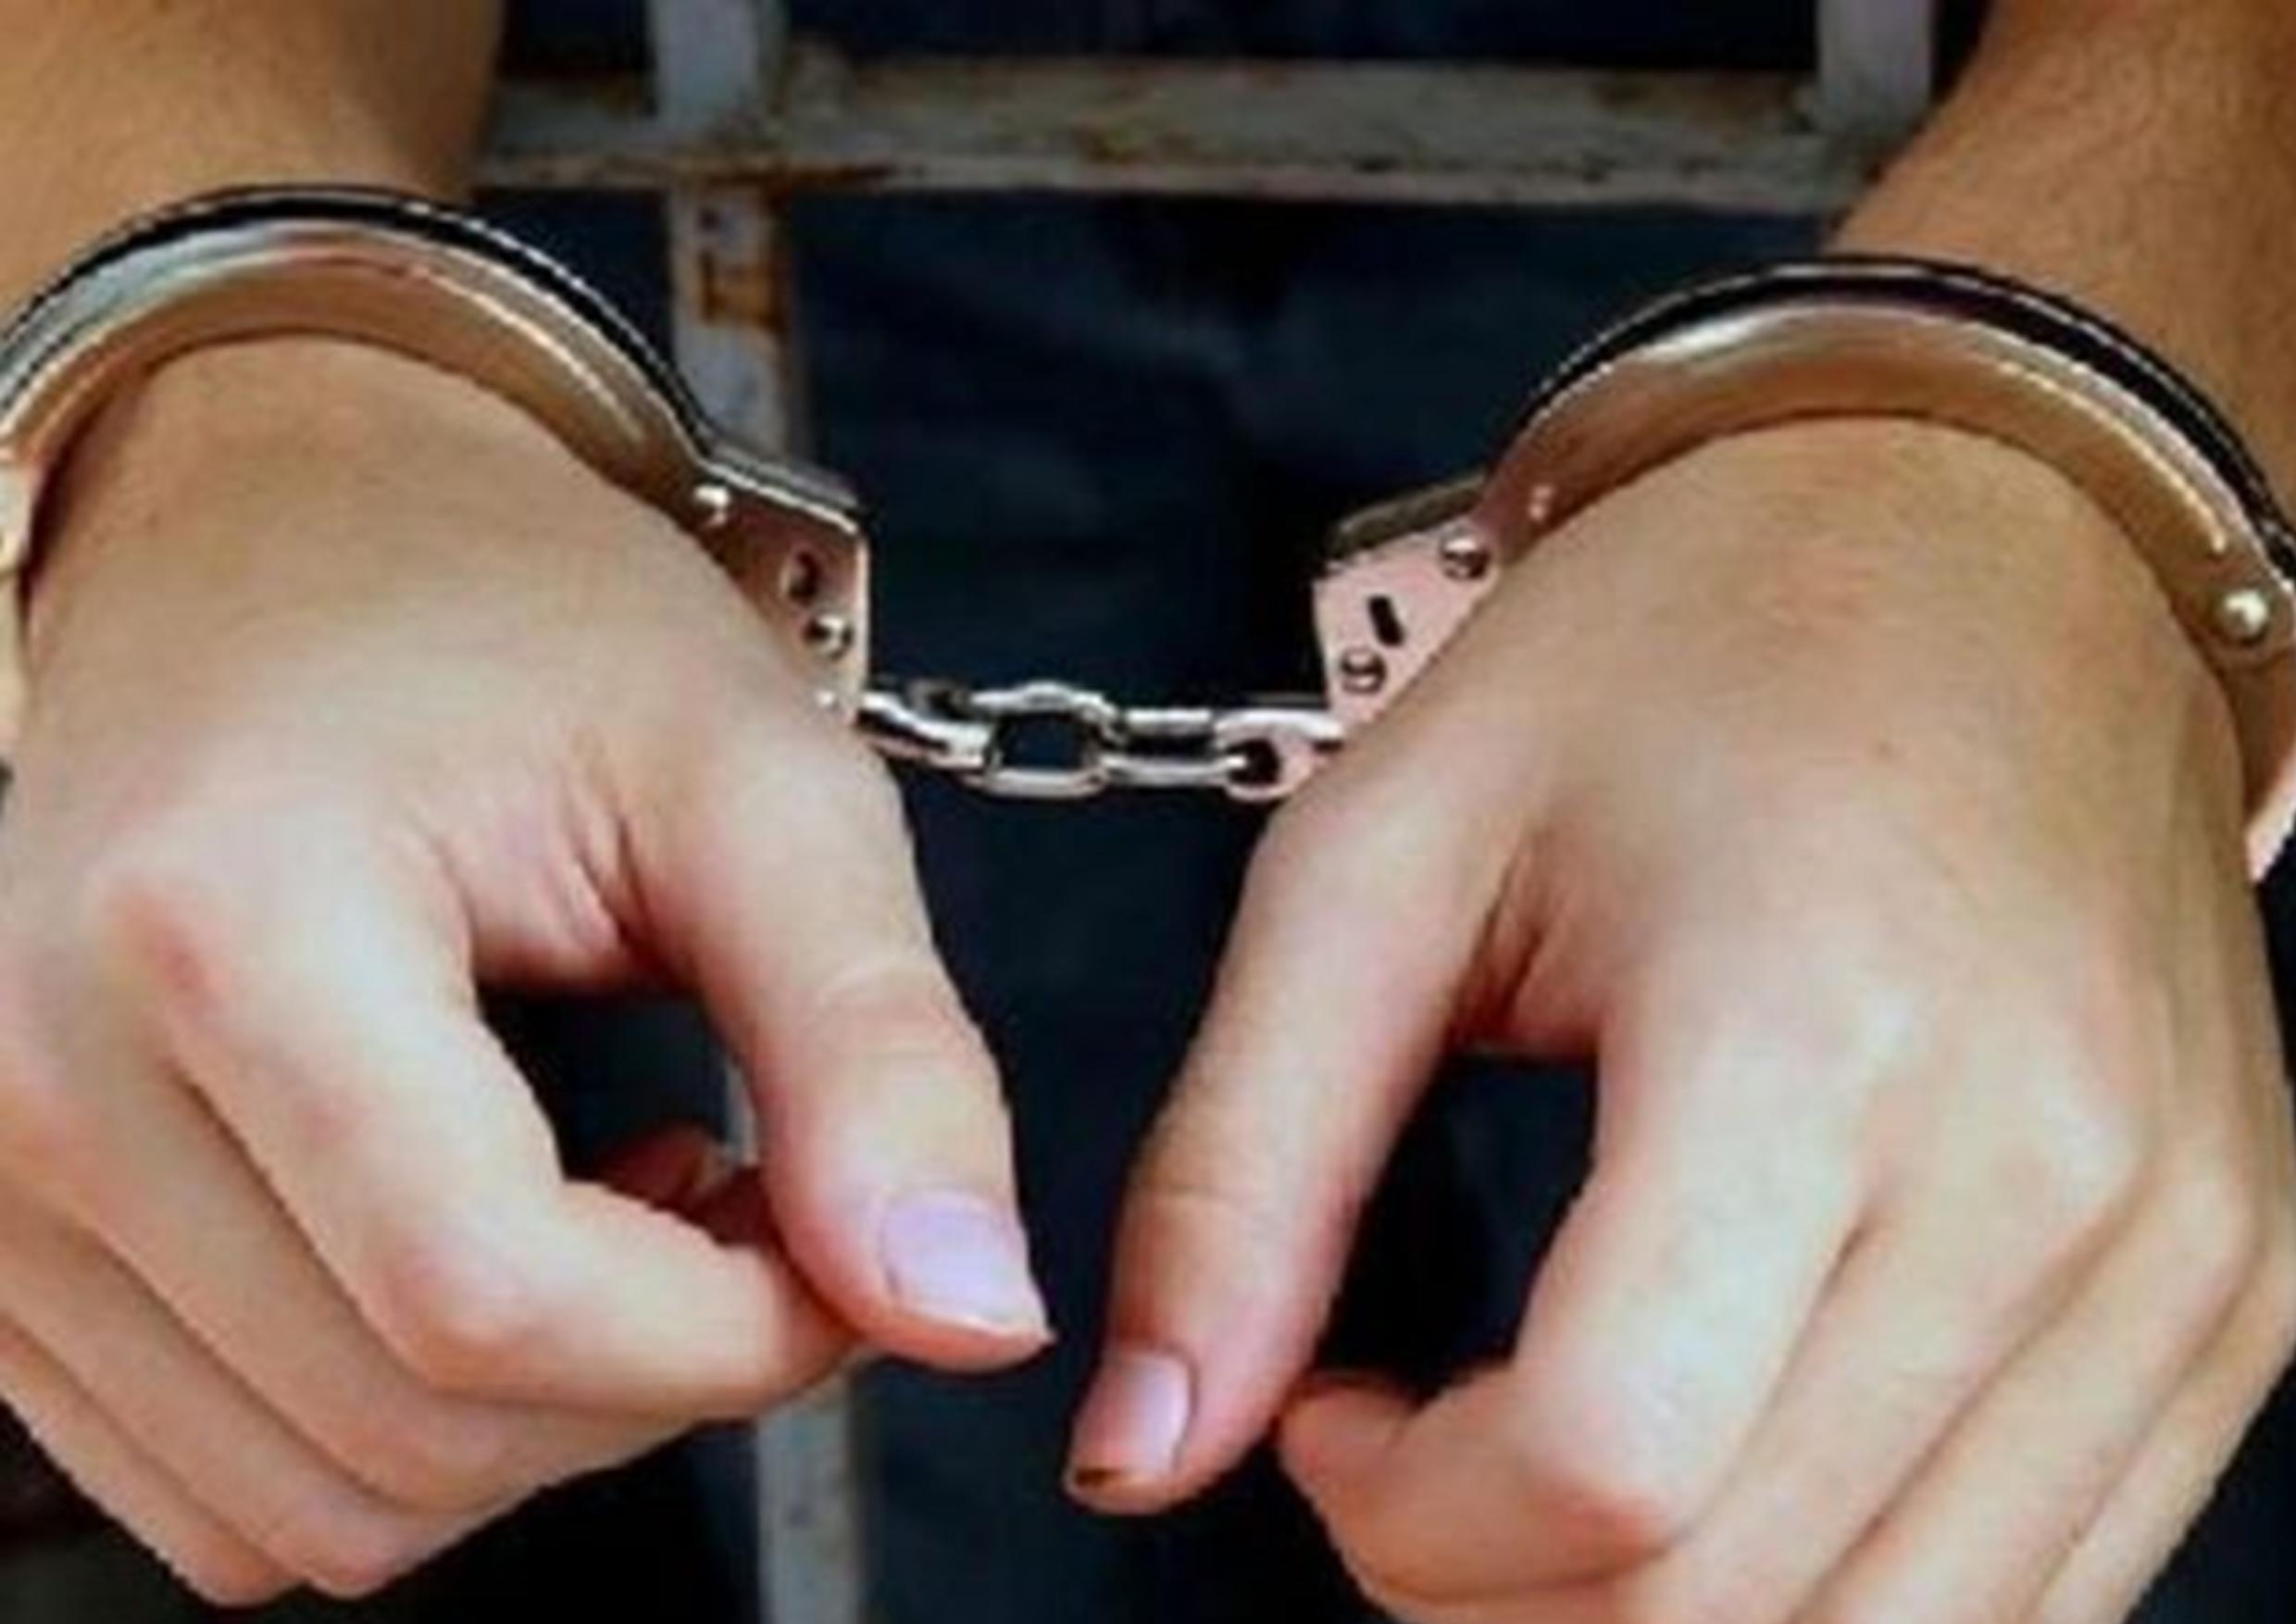 Polisi Akhirnya Ringkus Pelaku Pencabulan Terhadap Dua Keponakan Sendiri